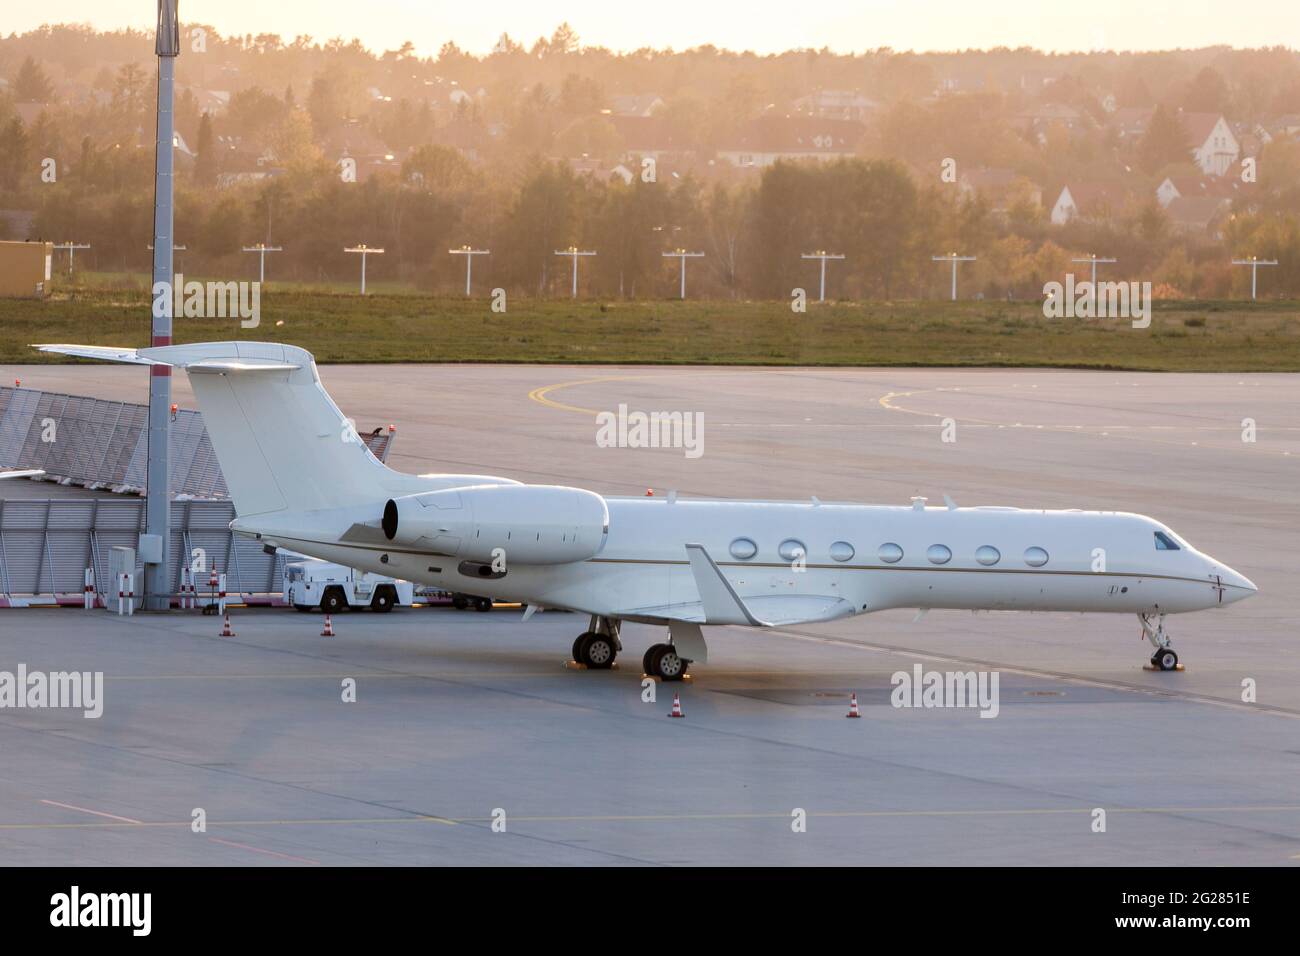 U.S. Air Force VIP Gulfstream C-37 jet. Stock Photo